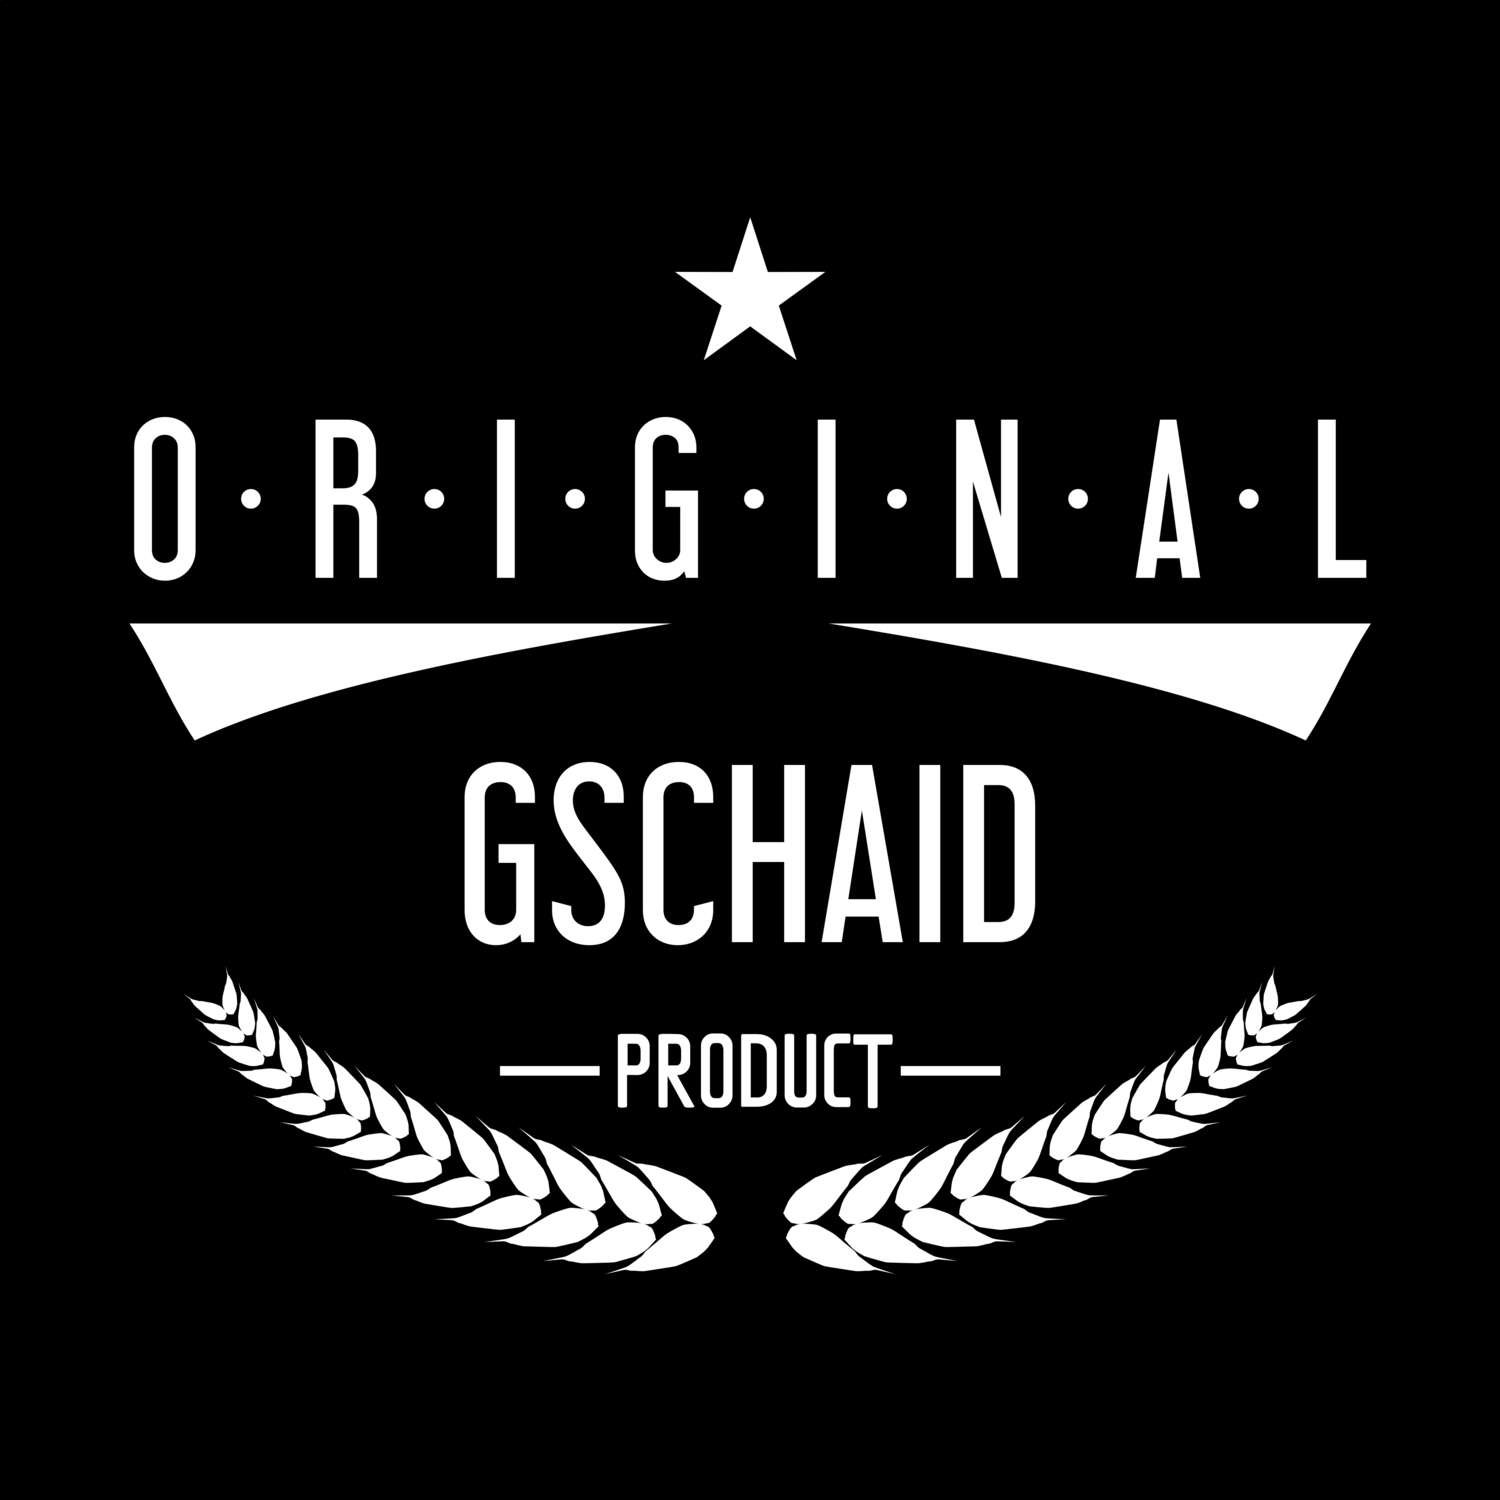 Gschaid T-Shirt »Original Product«